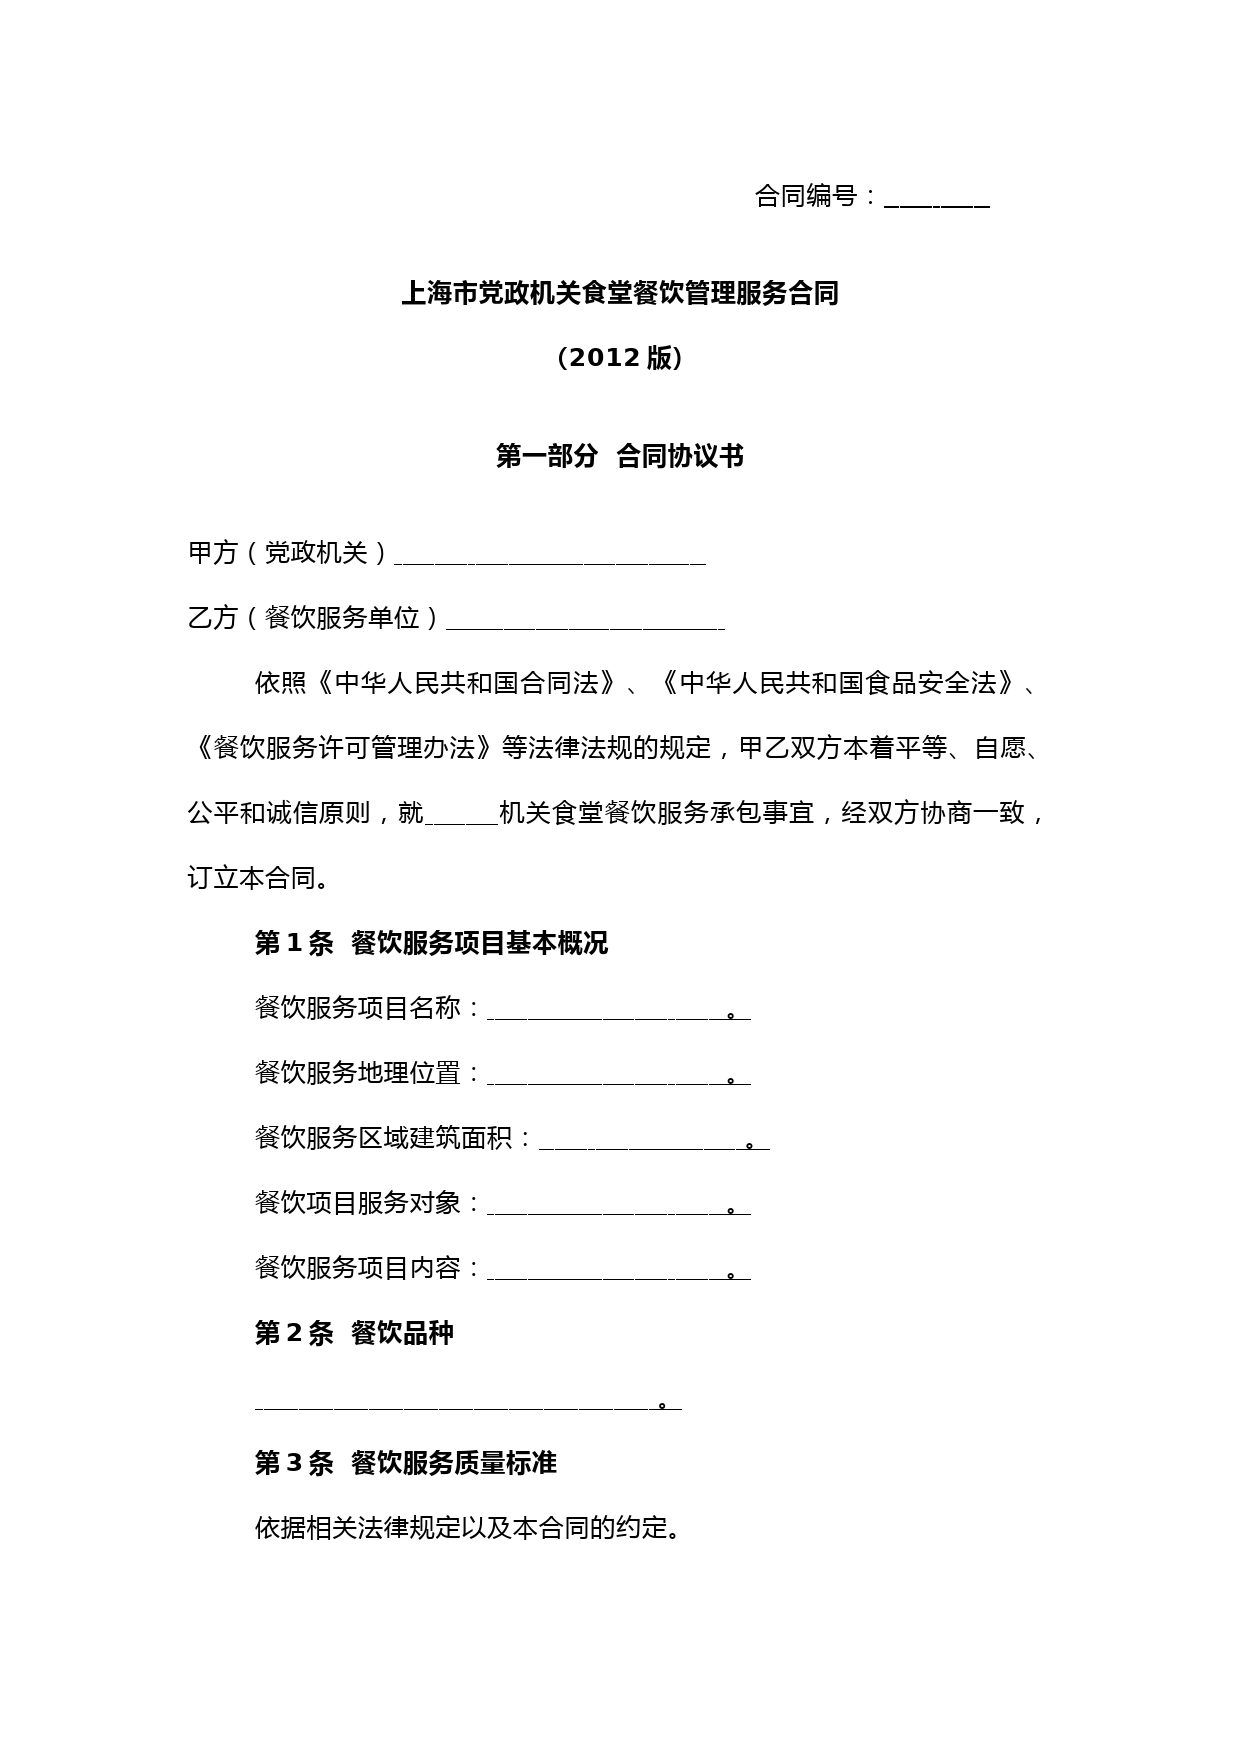 上海市党政机关食堂餐饮服务合同(示范文本)2012完整版